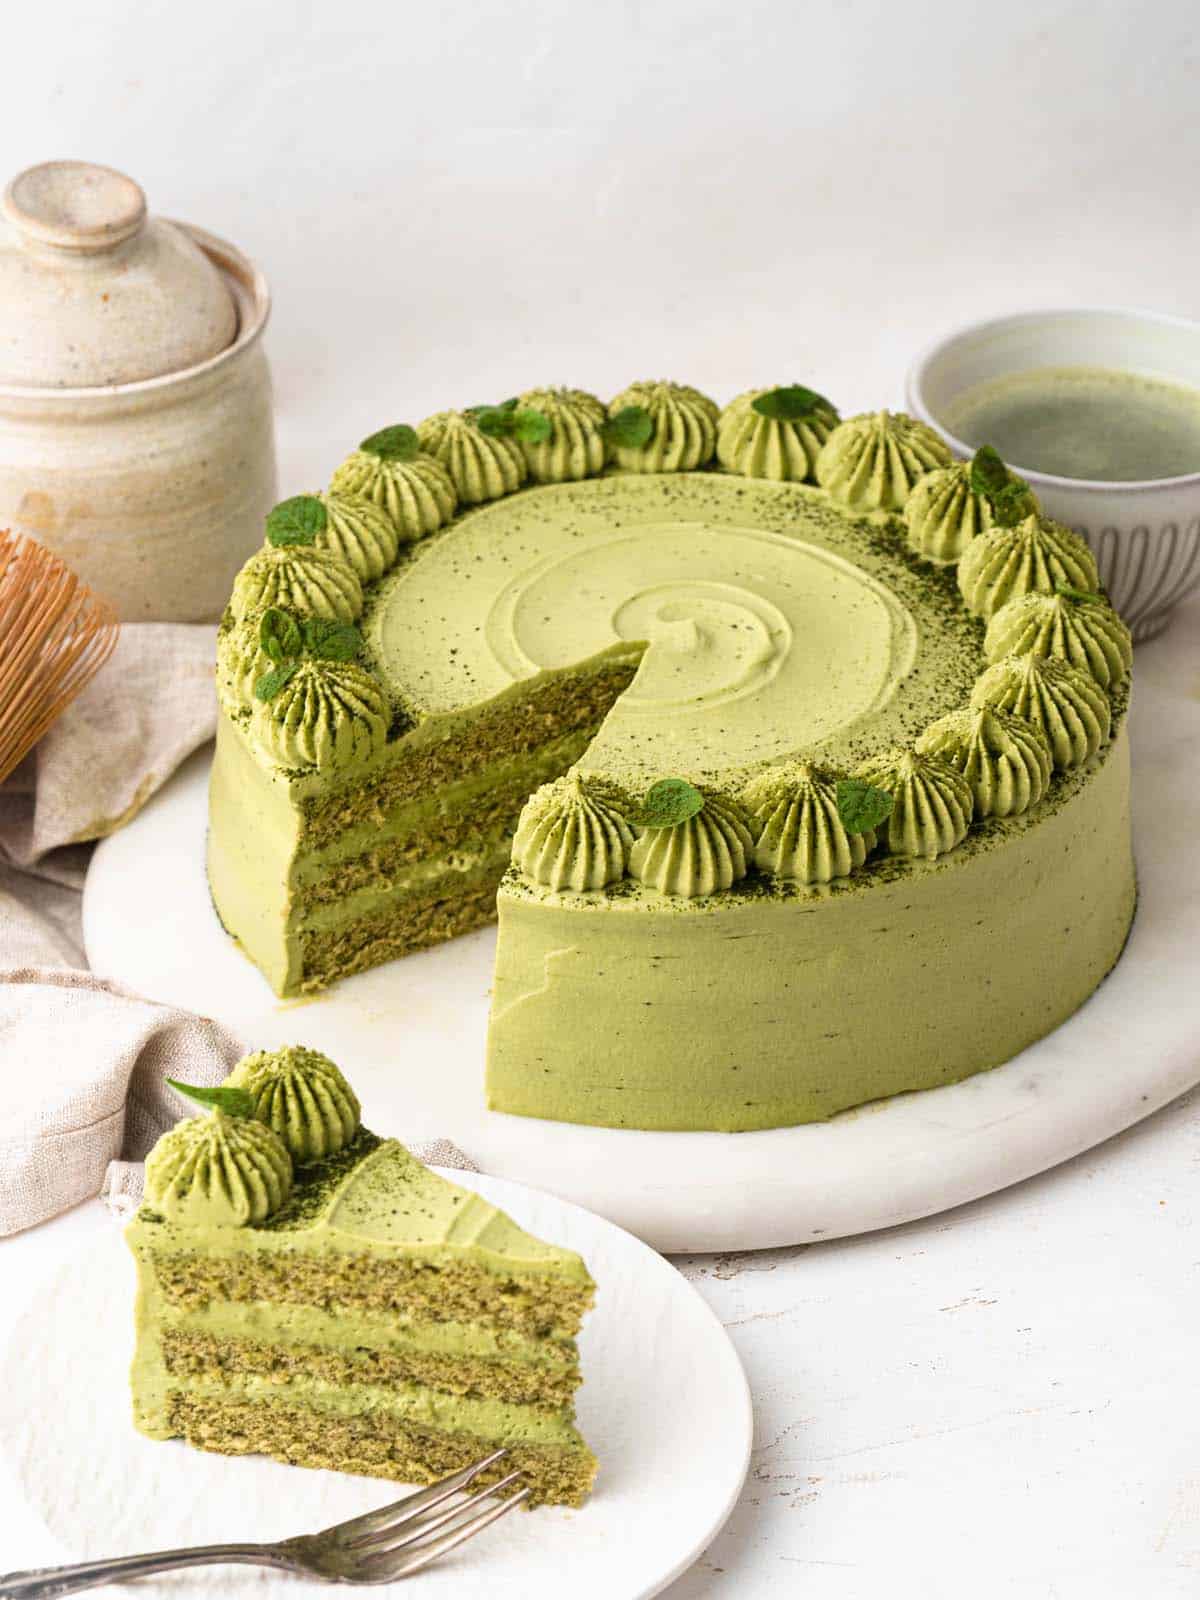 asian bakery matcha sponge cake with whipped cream